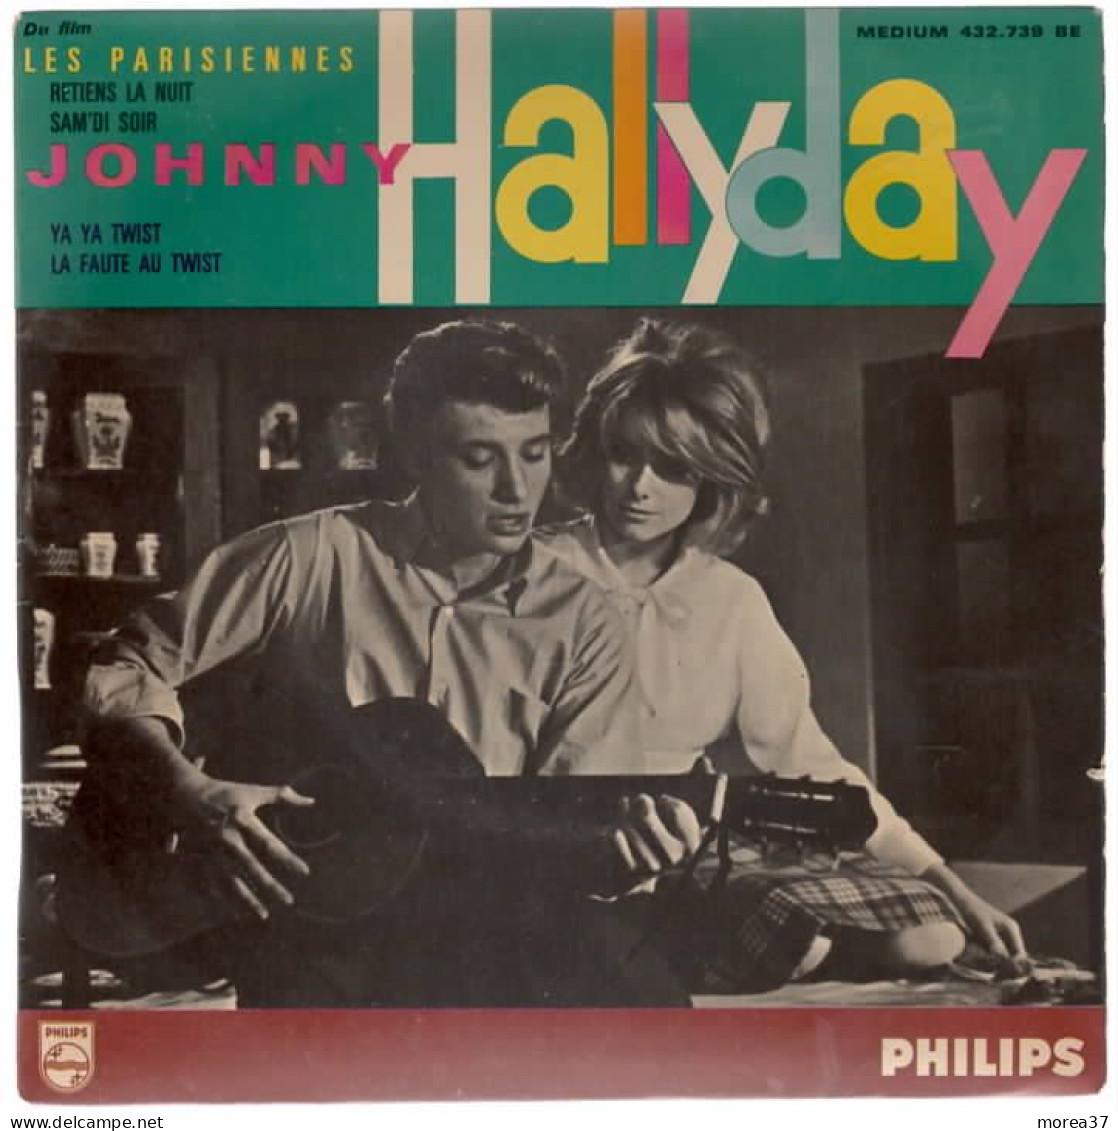 JOHNNY HALLYDAY  Retiens La Nuit    Du Film LES PARISIENNES    PHILIPS  432 .739 BE - Autres - Musique Française